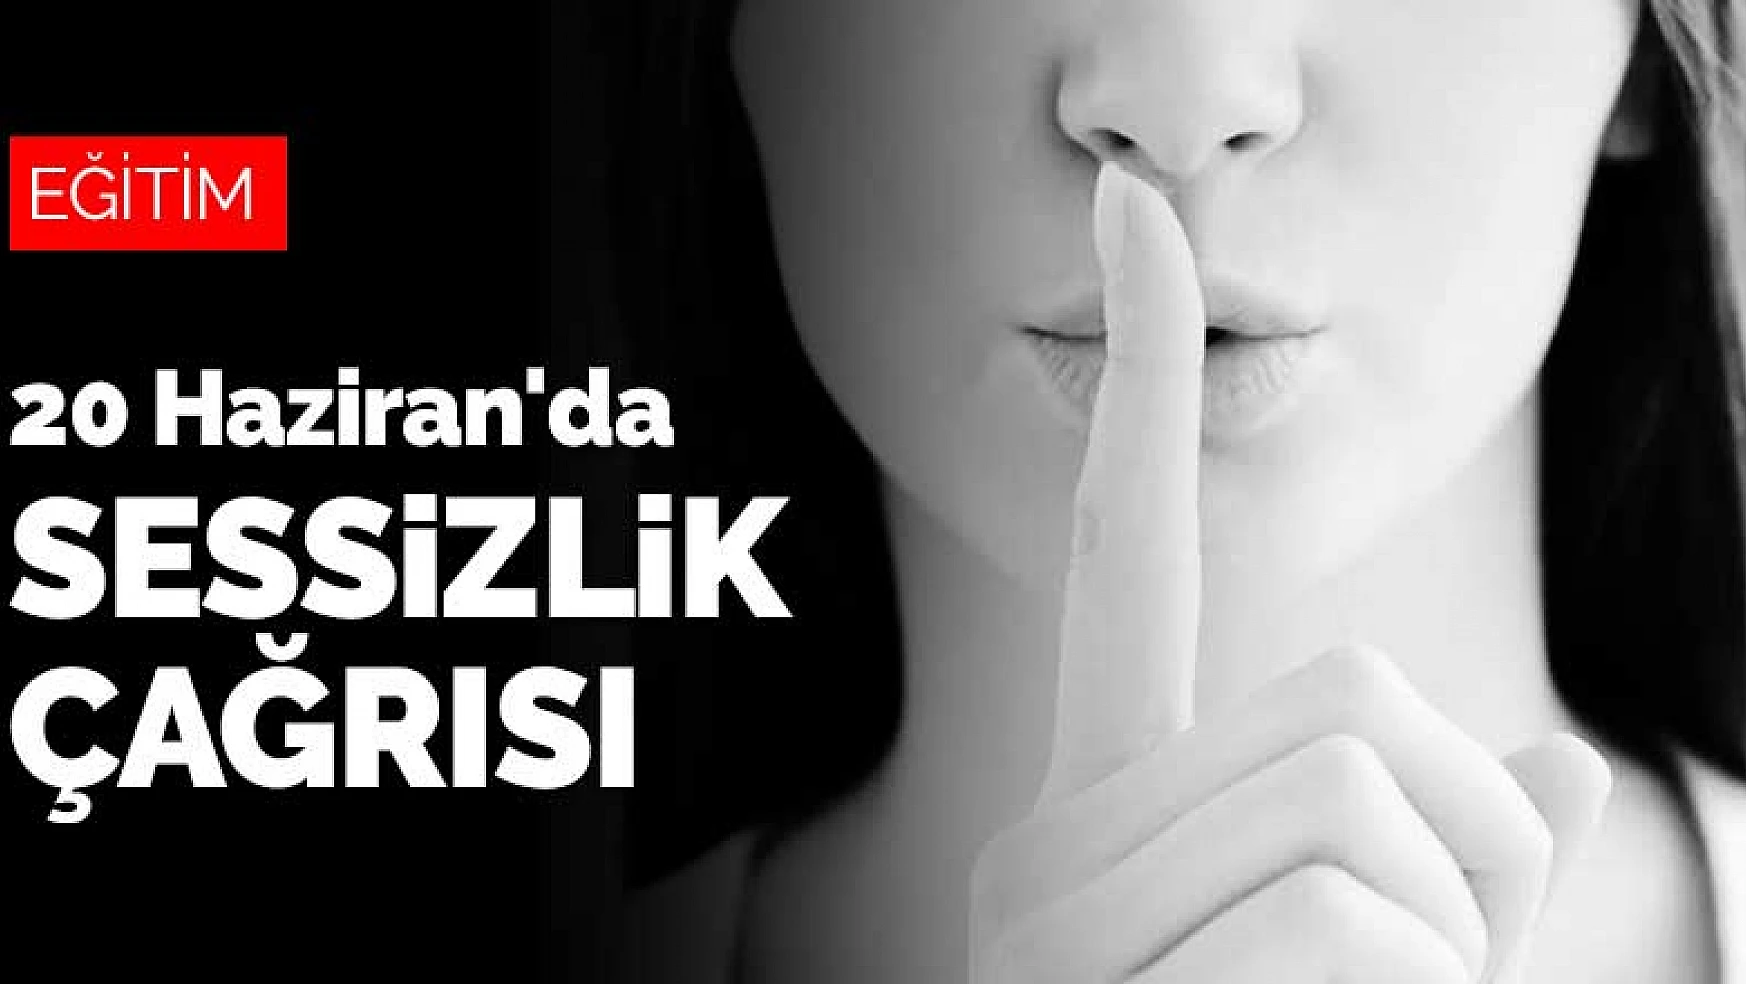 Konya ve tüm Türkiye'ye 20 Haziran'da sessizlik çağrısı